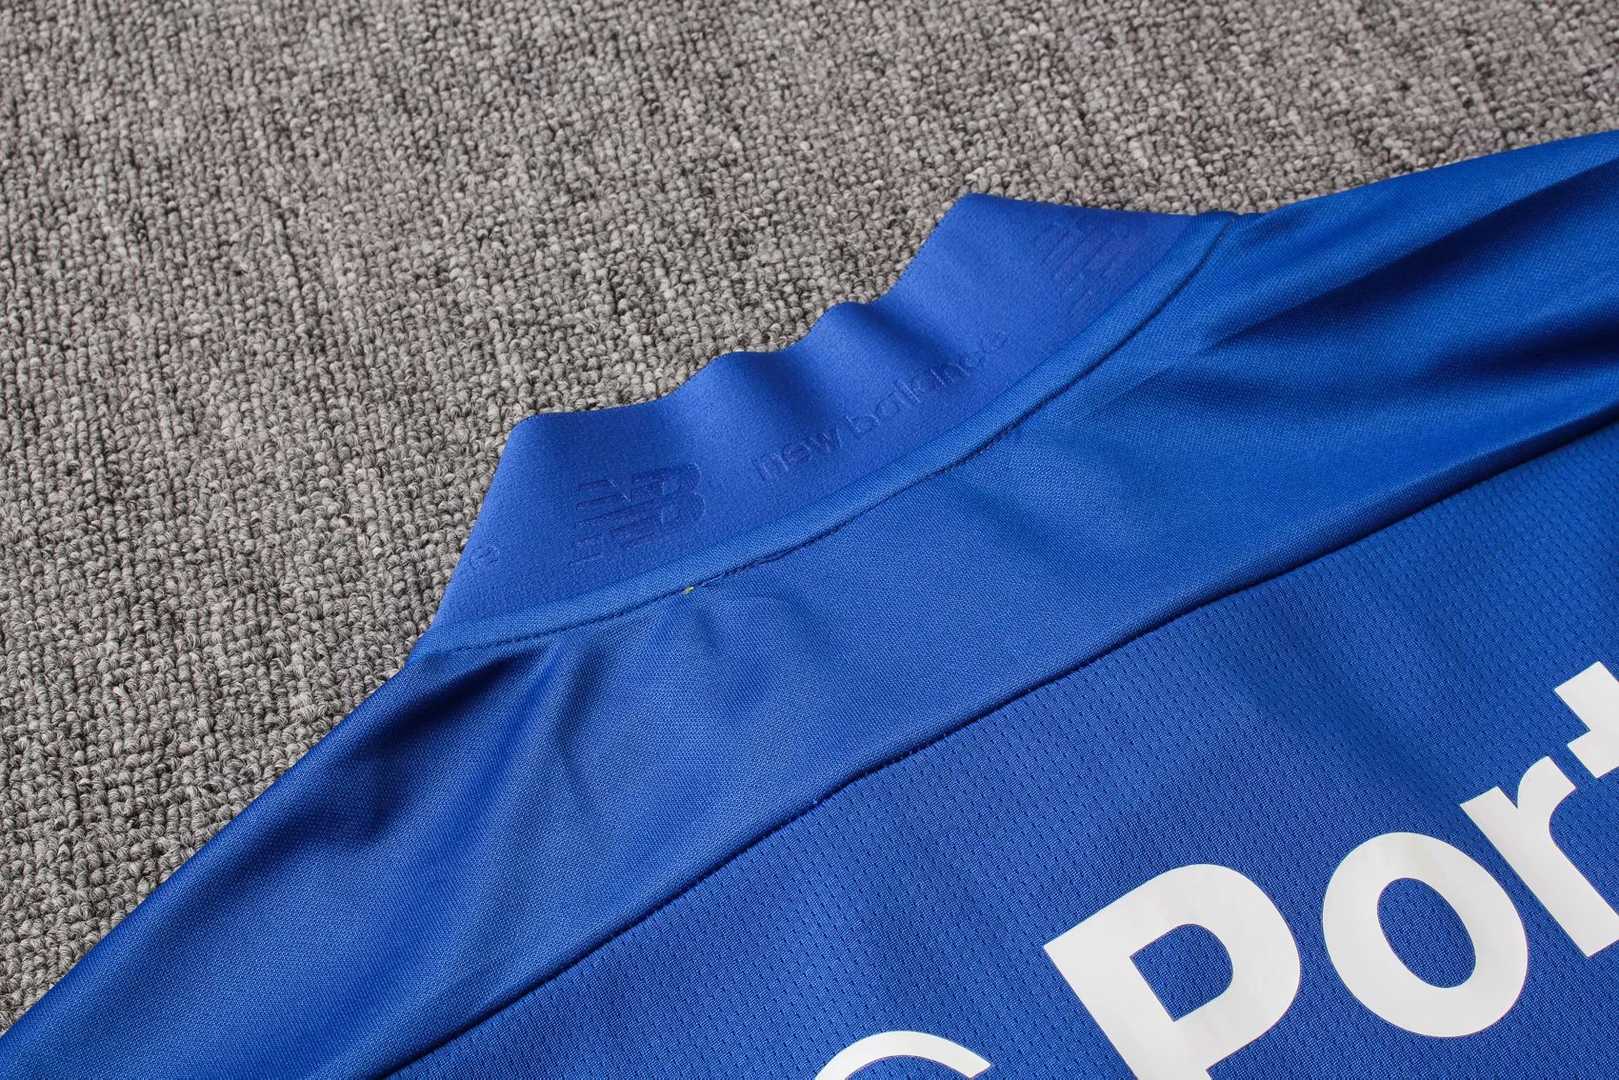 2019/20 FC Porto Blue Mens Soccer Training Suit(Jacket + Pants)